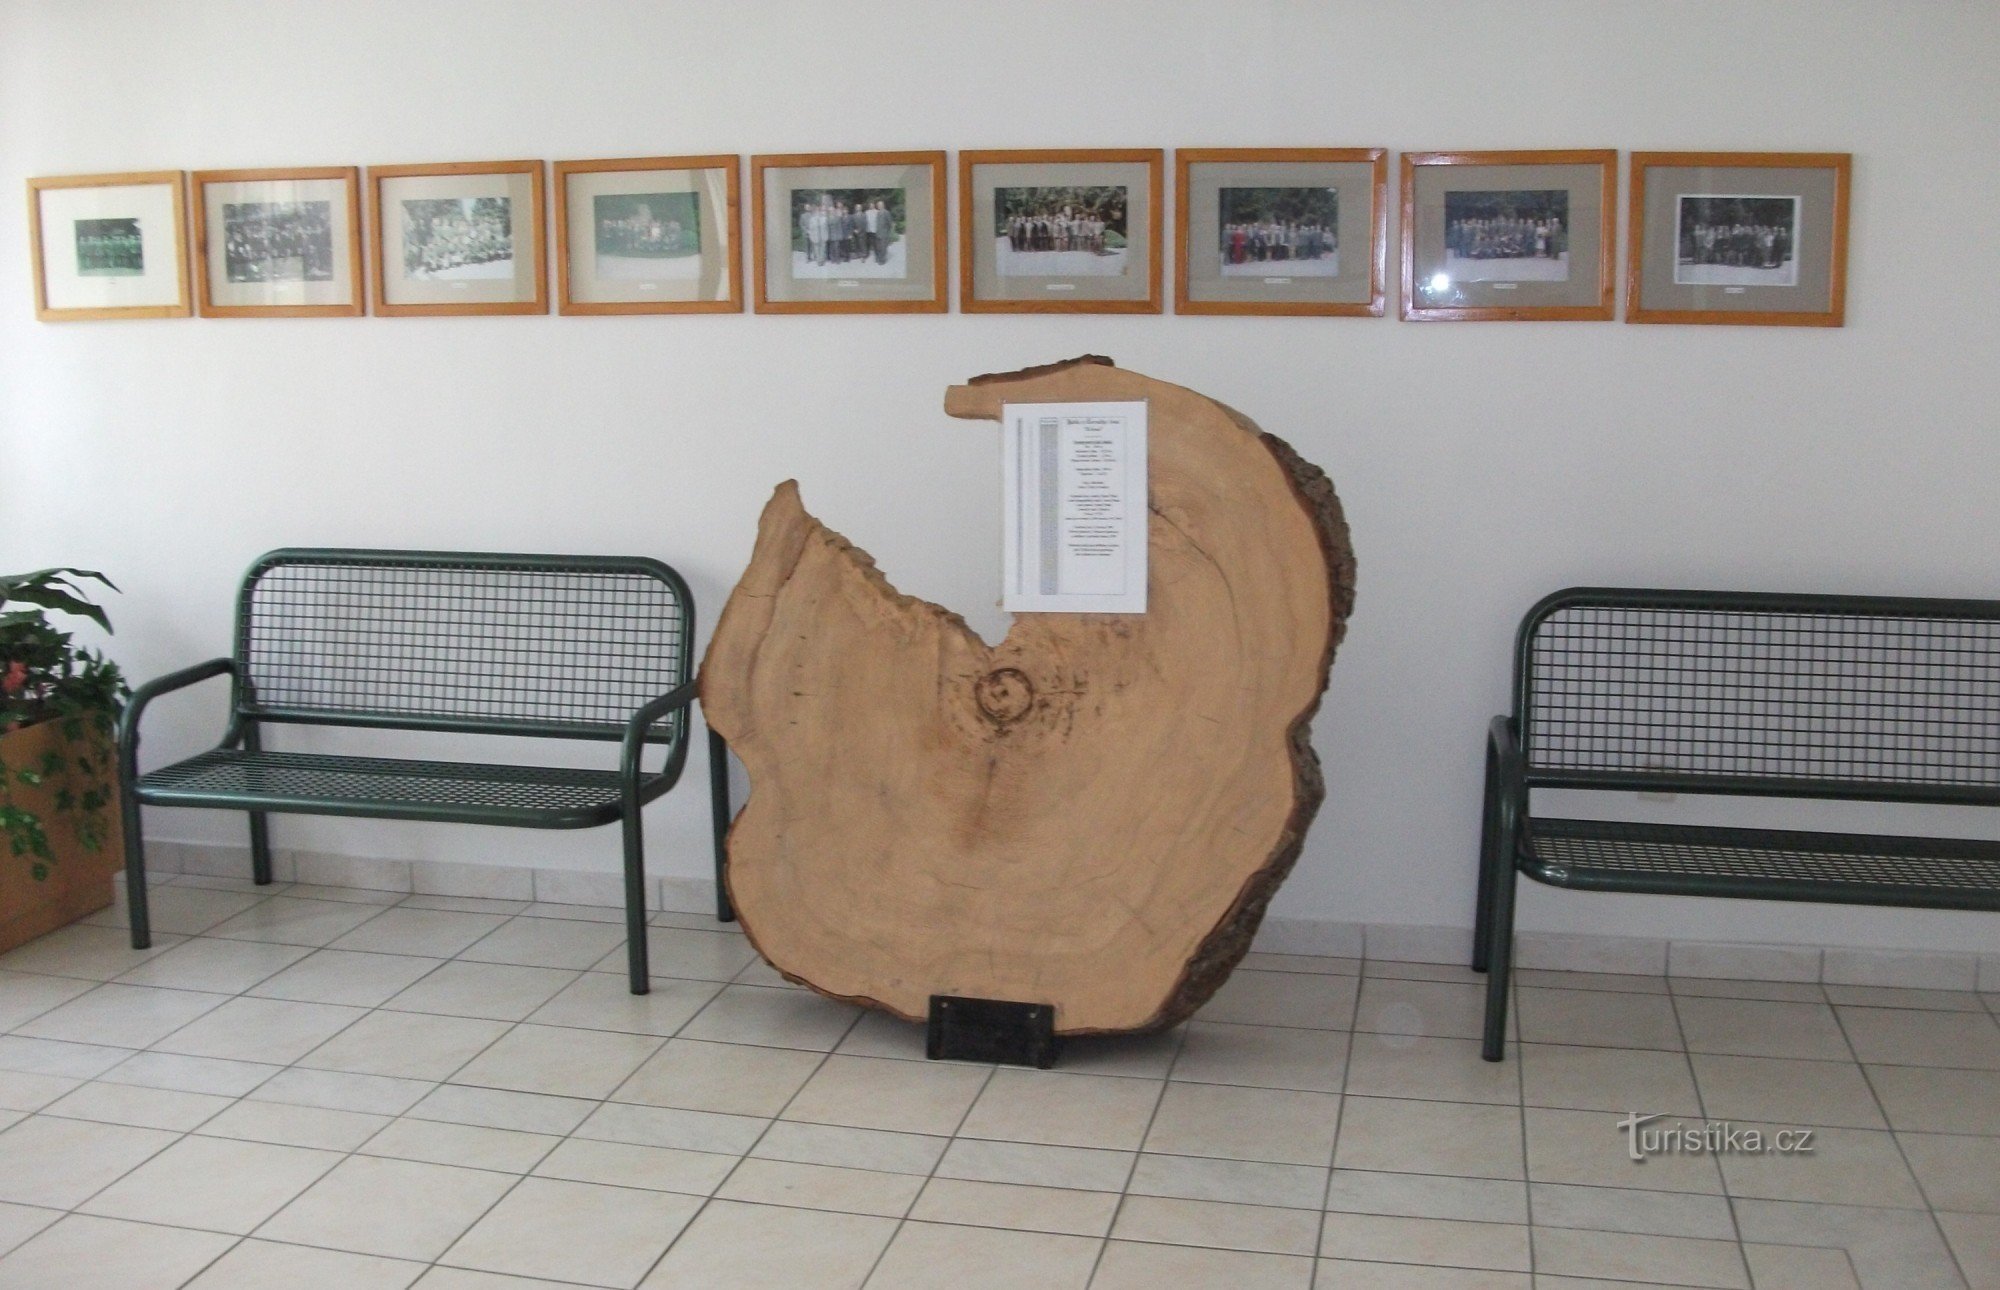 Im Korridor können die Schüler auch diesem einzigartigen Exemplar eines Baumes begegnen